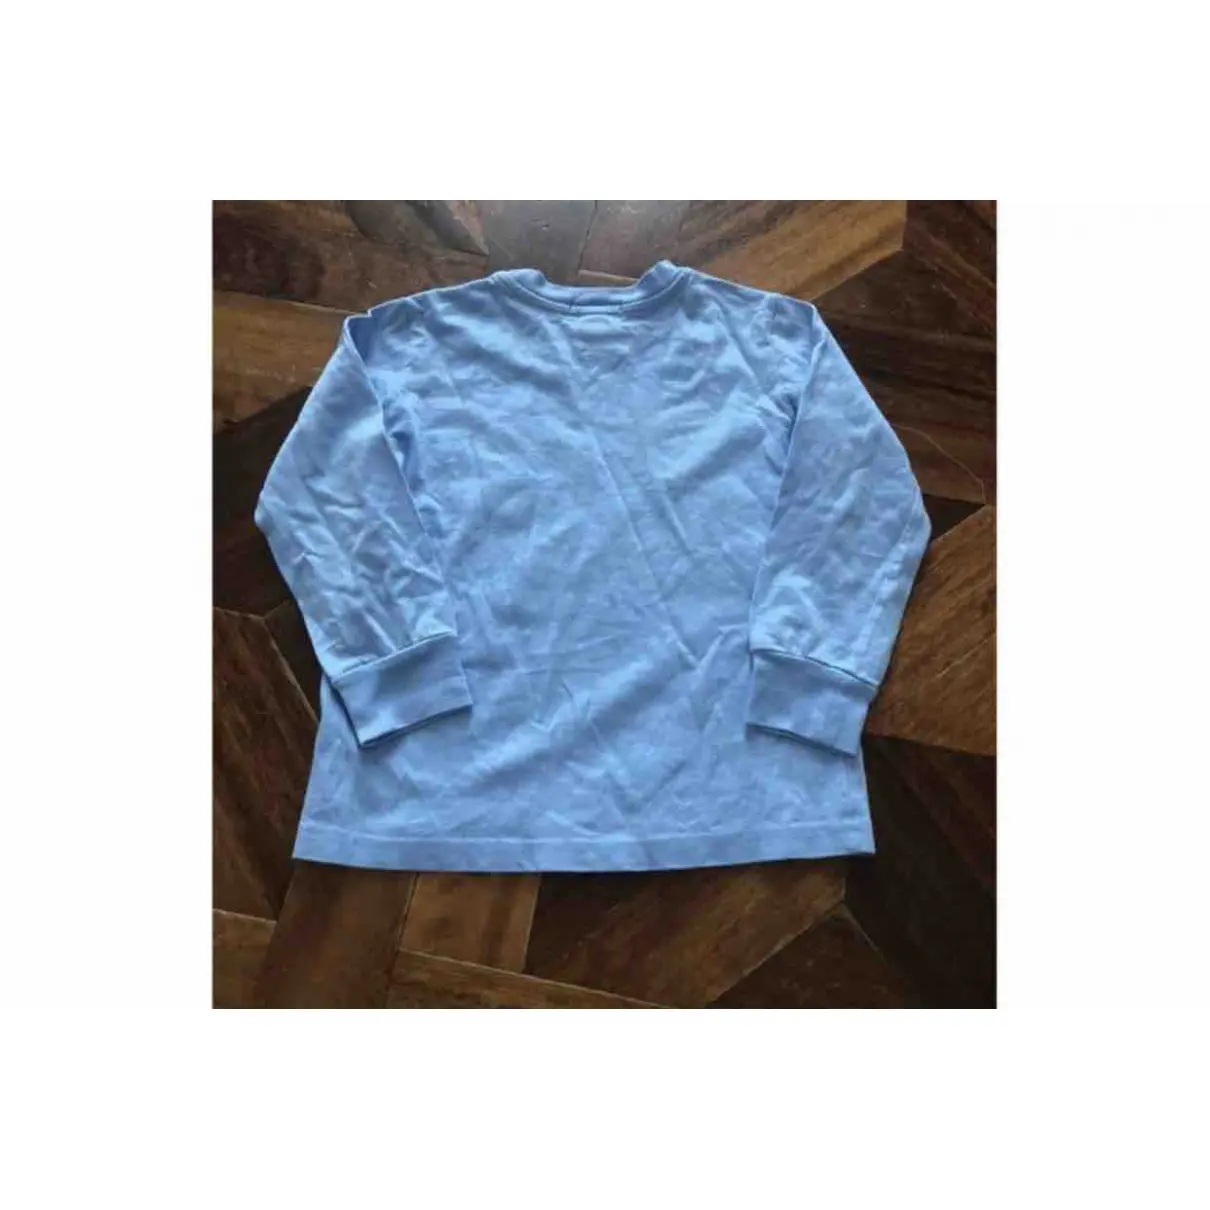 Buy Polo Ralph Lauren T-shirt online